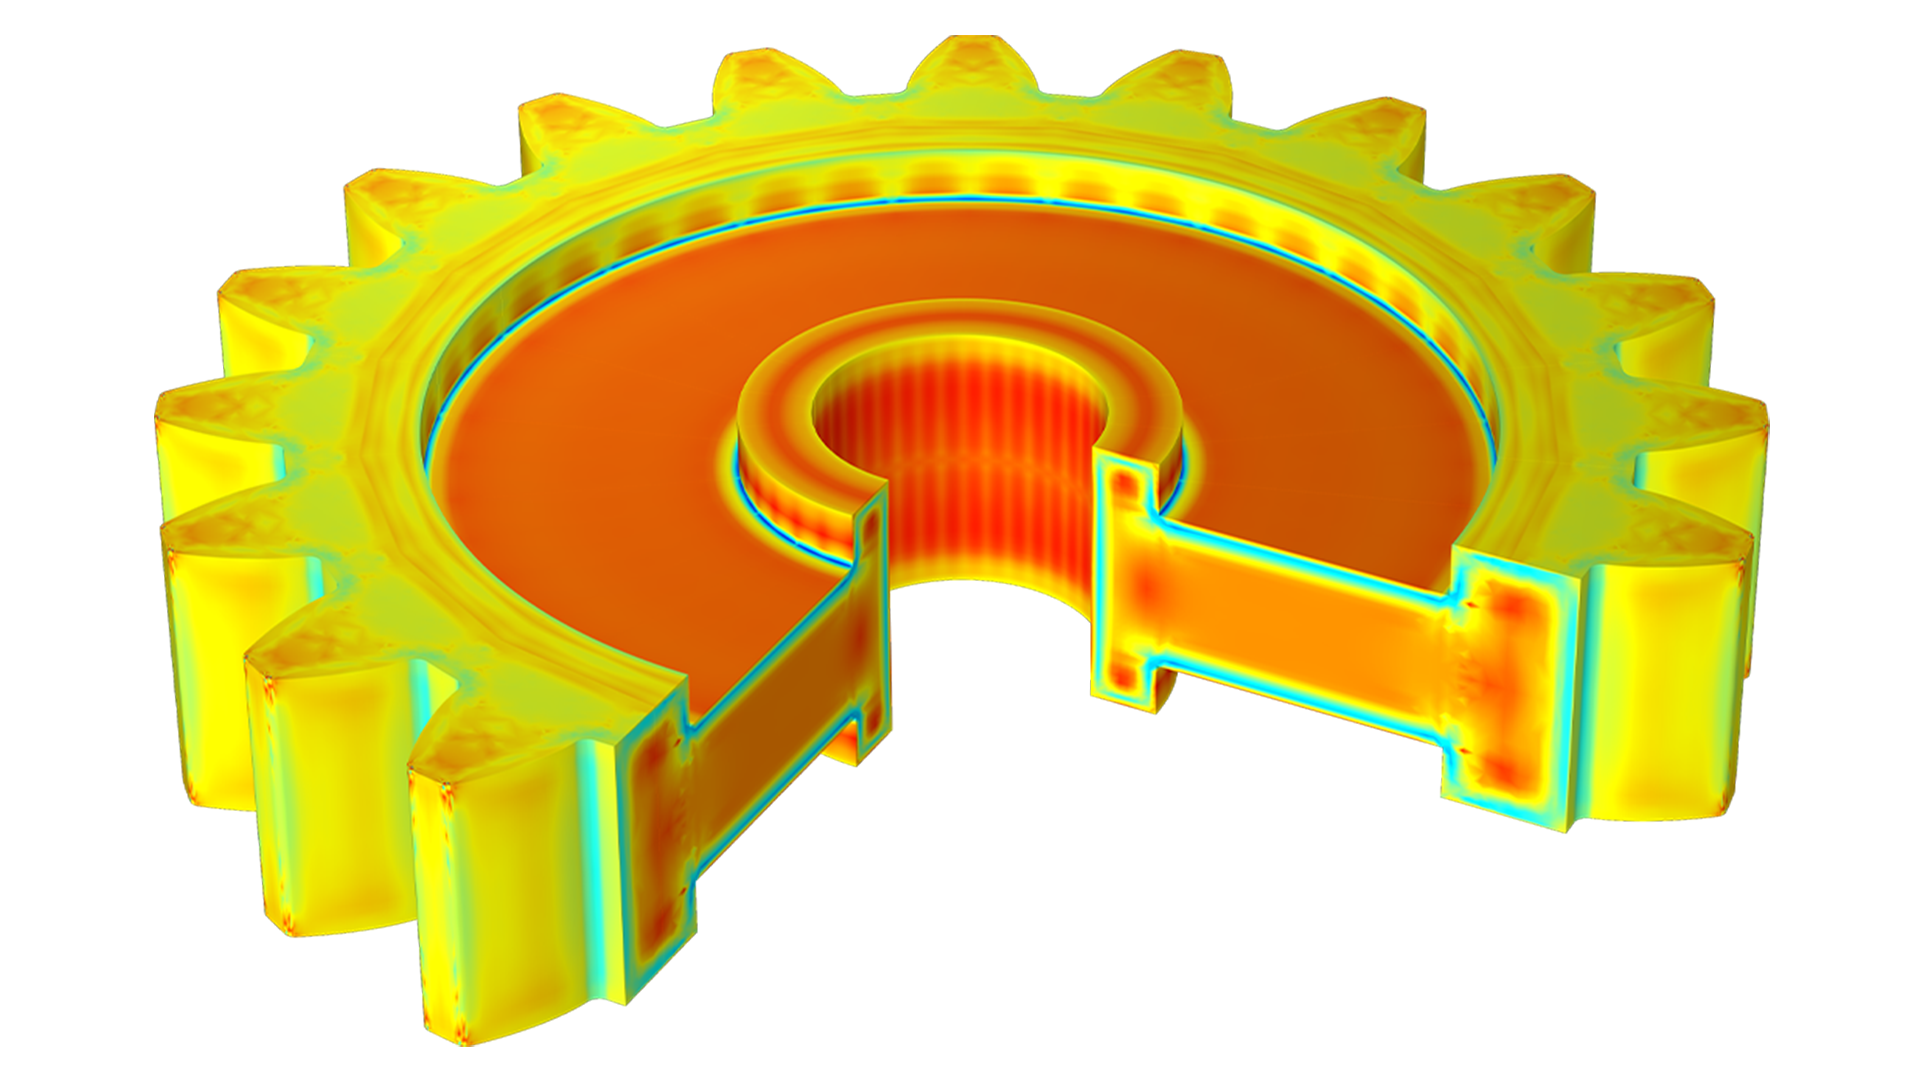 Ein Modell eines Stirnrads, das in den Farben Orange, Gelb und Grün dargestellt ist. Mit Hilfe eines Ausschnitts wird zusätzlich das Innere des Zahnrads abgebildet.